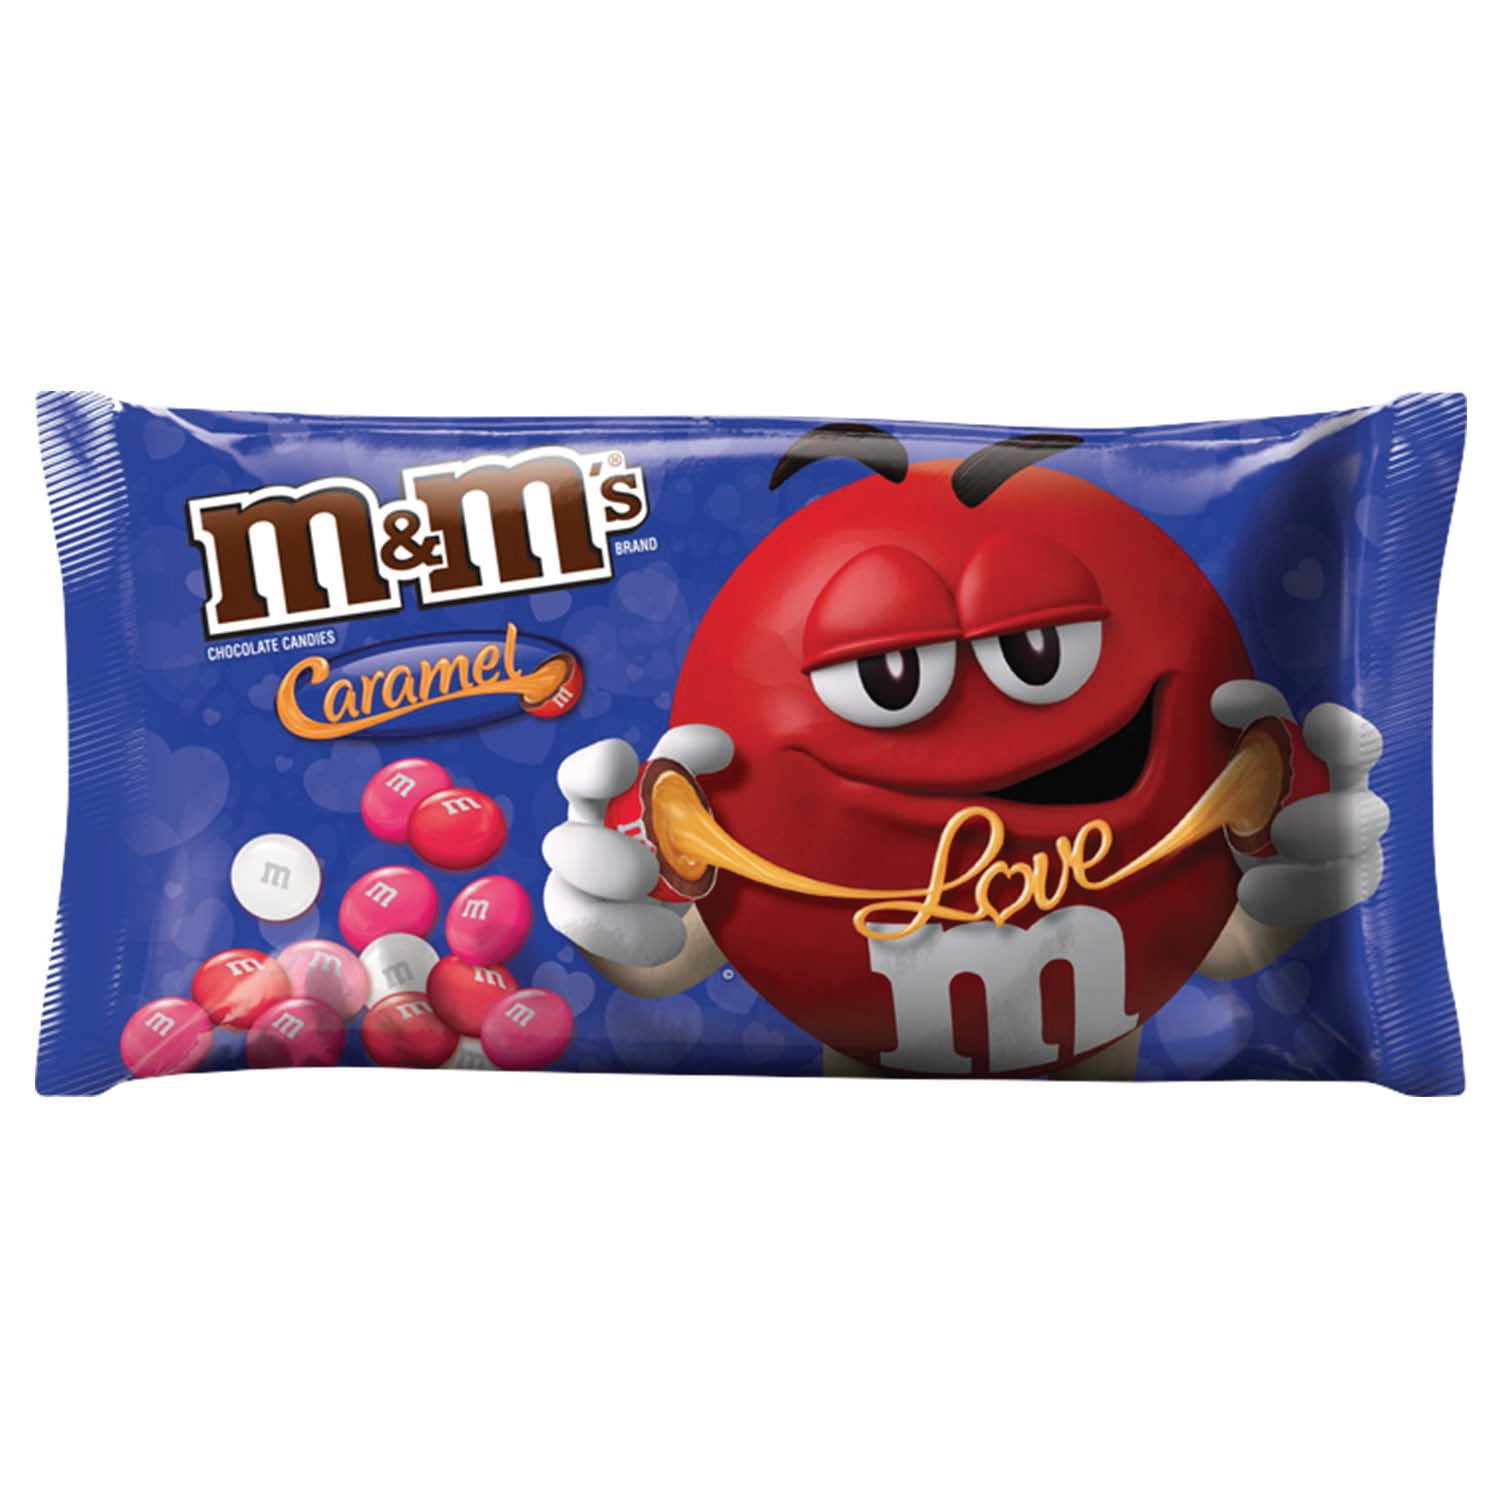 caramel m&ms walmart